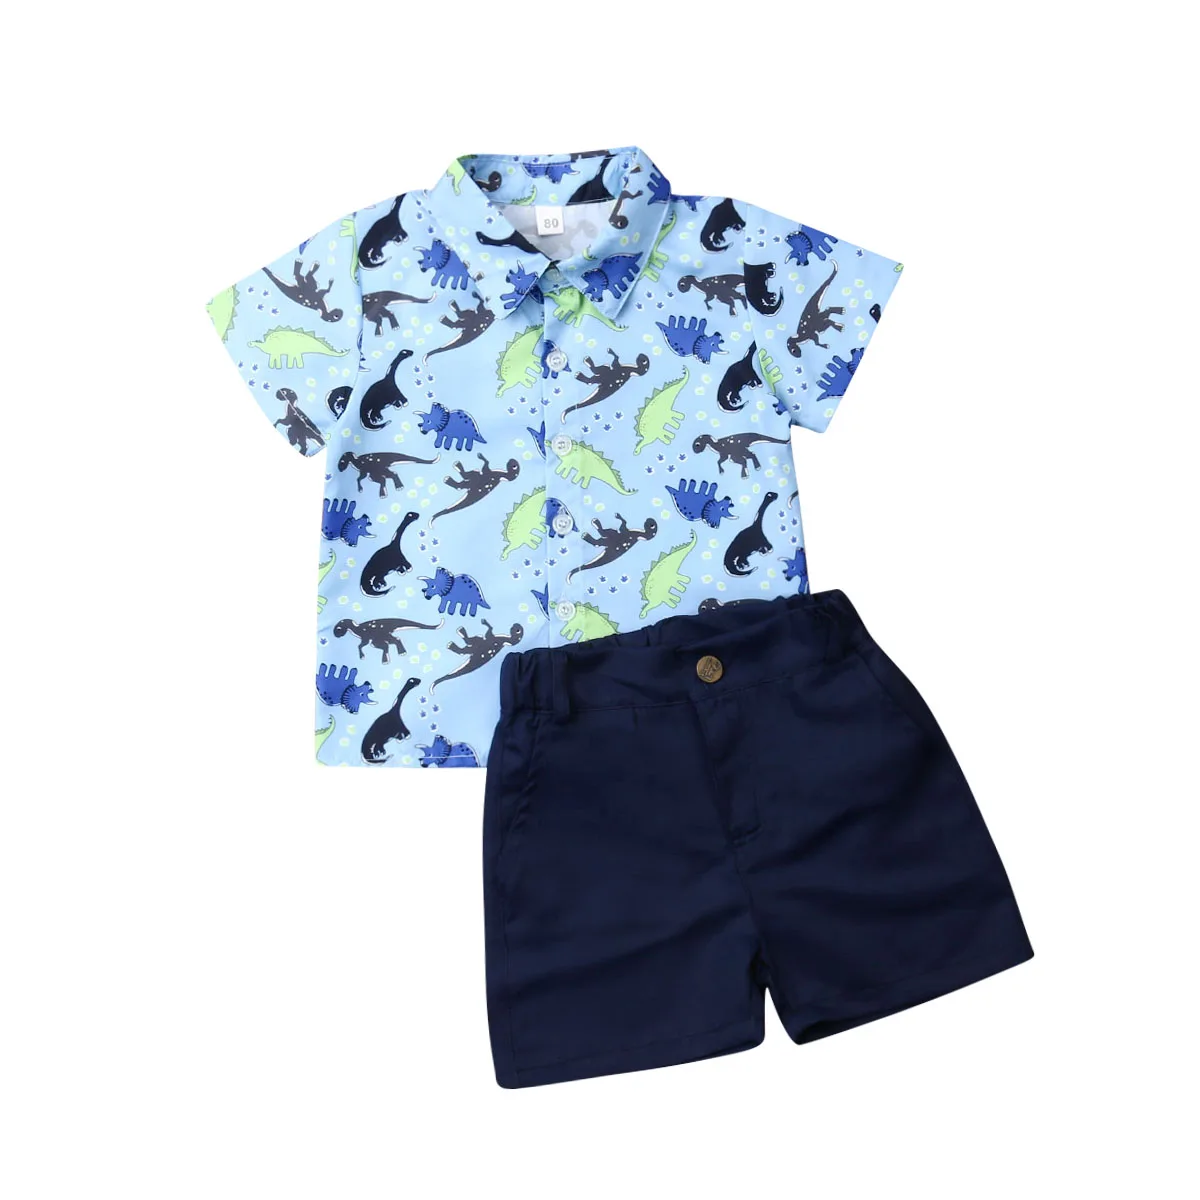 Летняя одежда для малышей одежда джентльмена для маленьких мальчиков яркая рубашка с динозаврами Топ и шортики официальный костюм От 1 до 6 лет - Color: Navy Blue